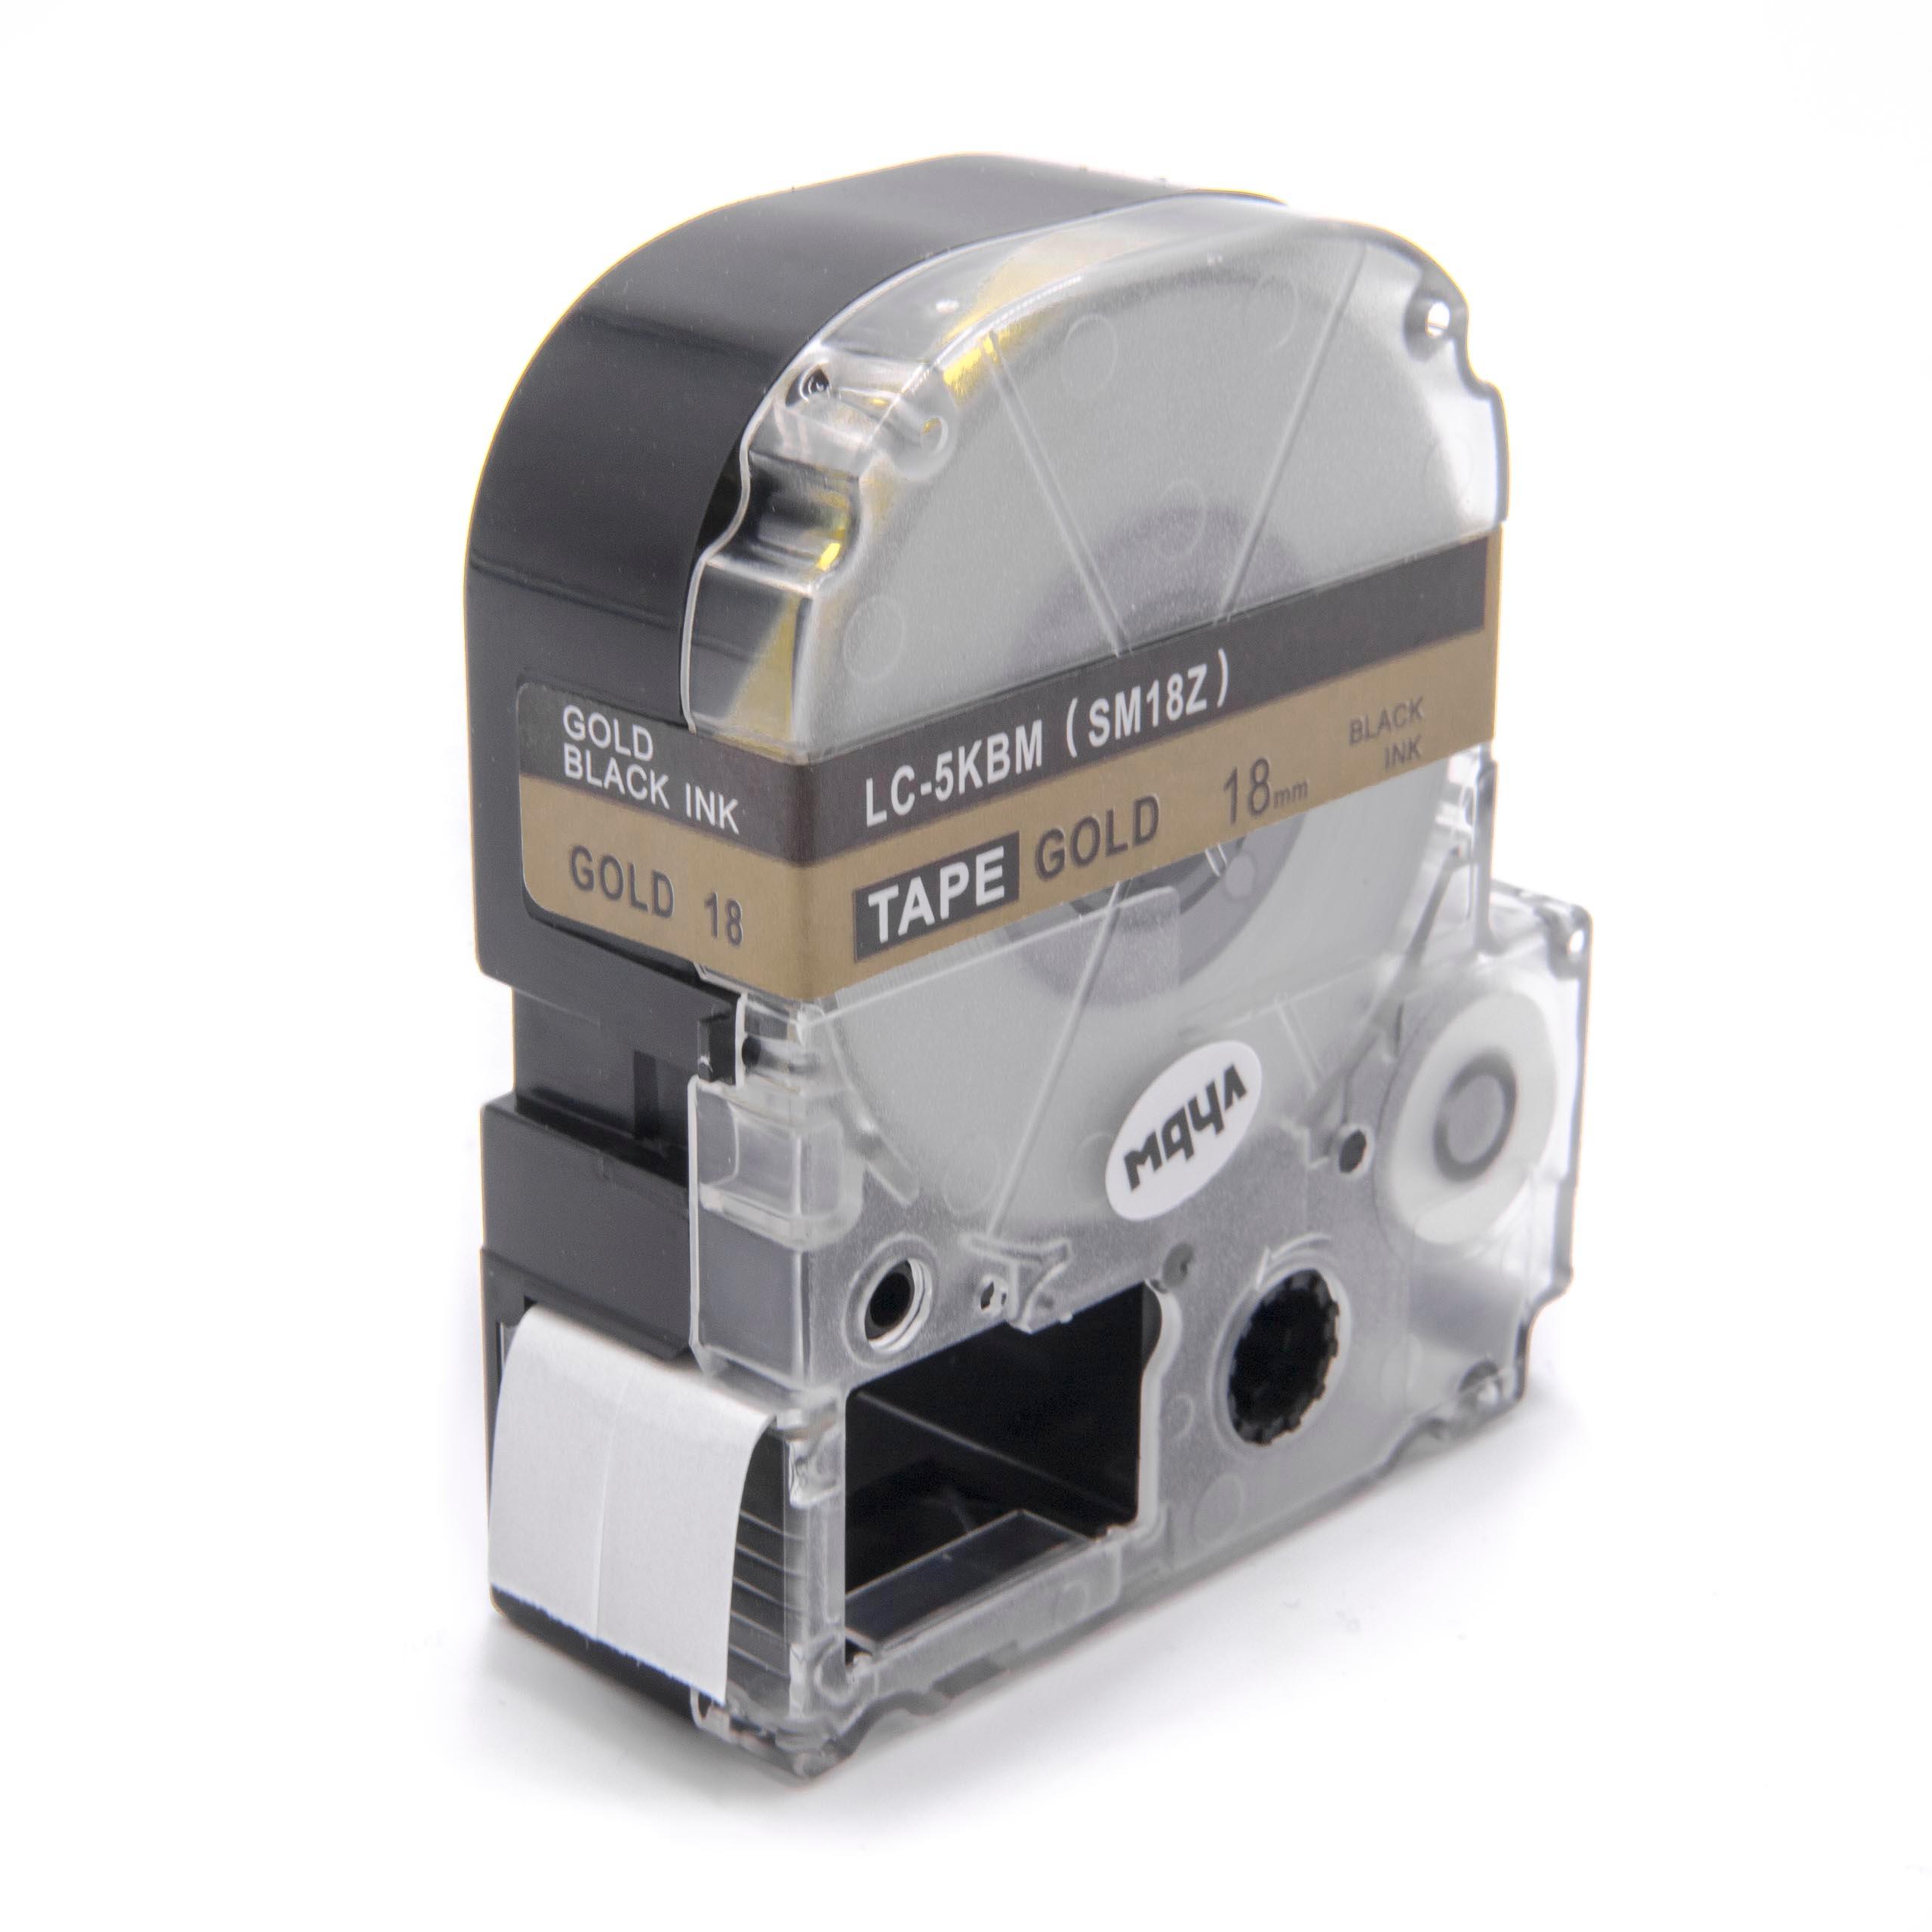 Cassette à ruban remplace Epson LC-5KBM - 18mm lettrage Noir ruban Or